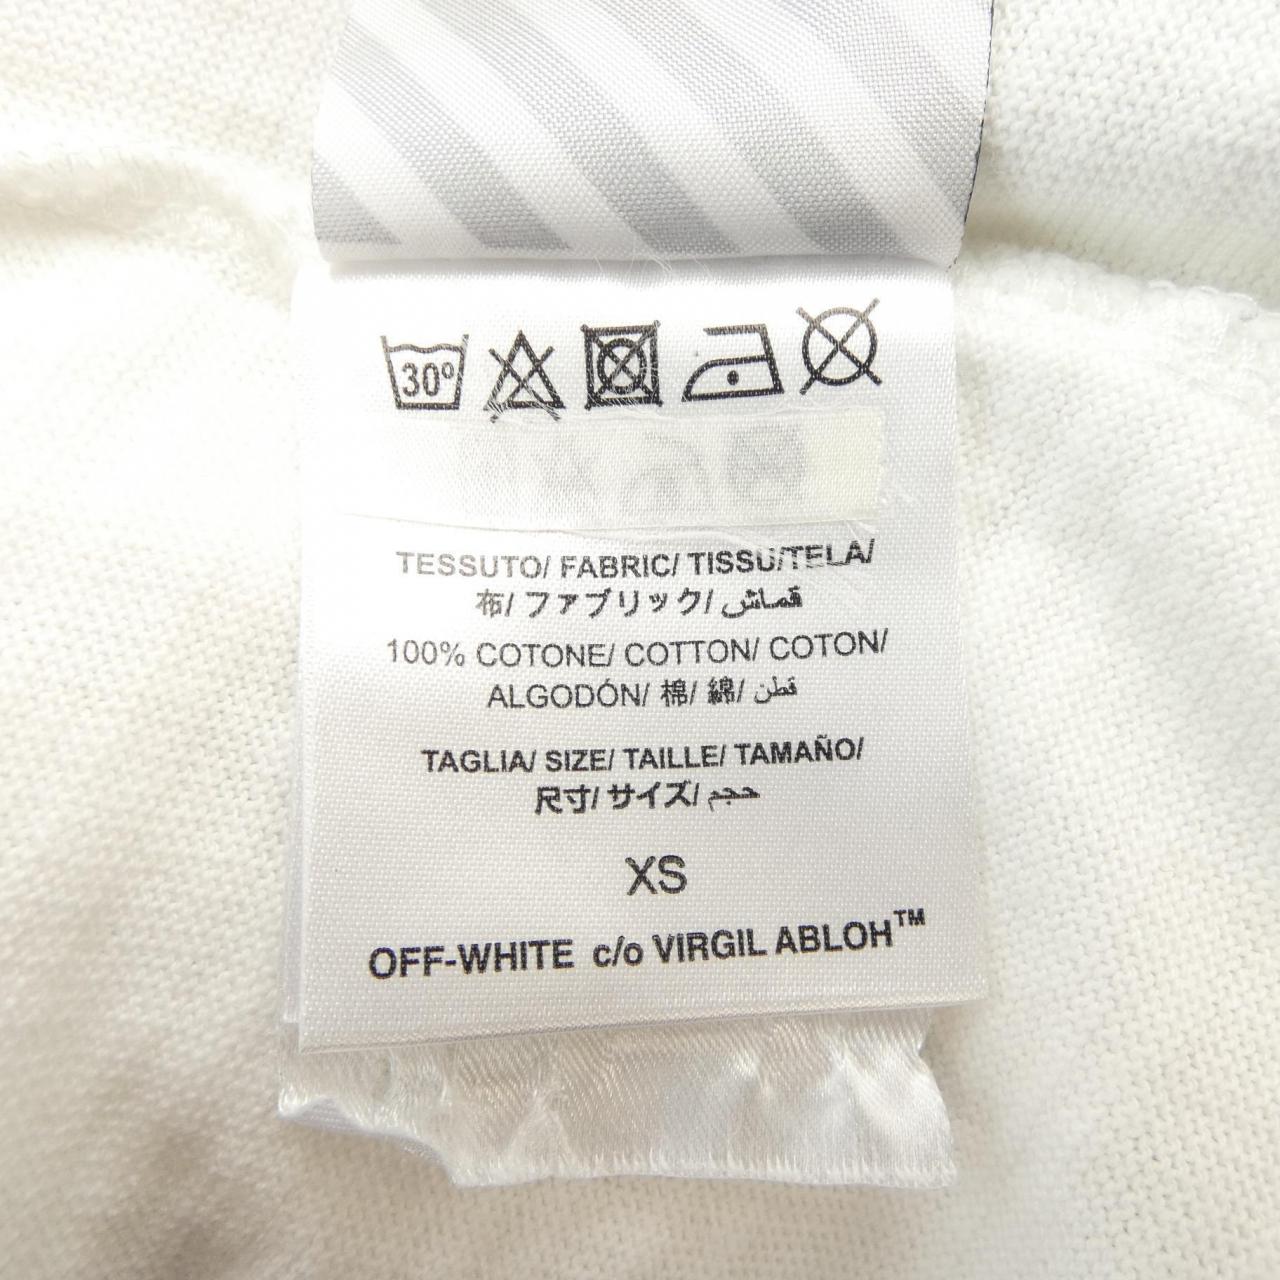 OFF-WHITE-WHITE T 恤